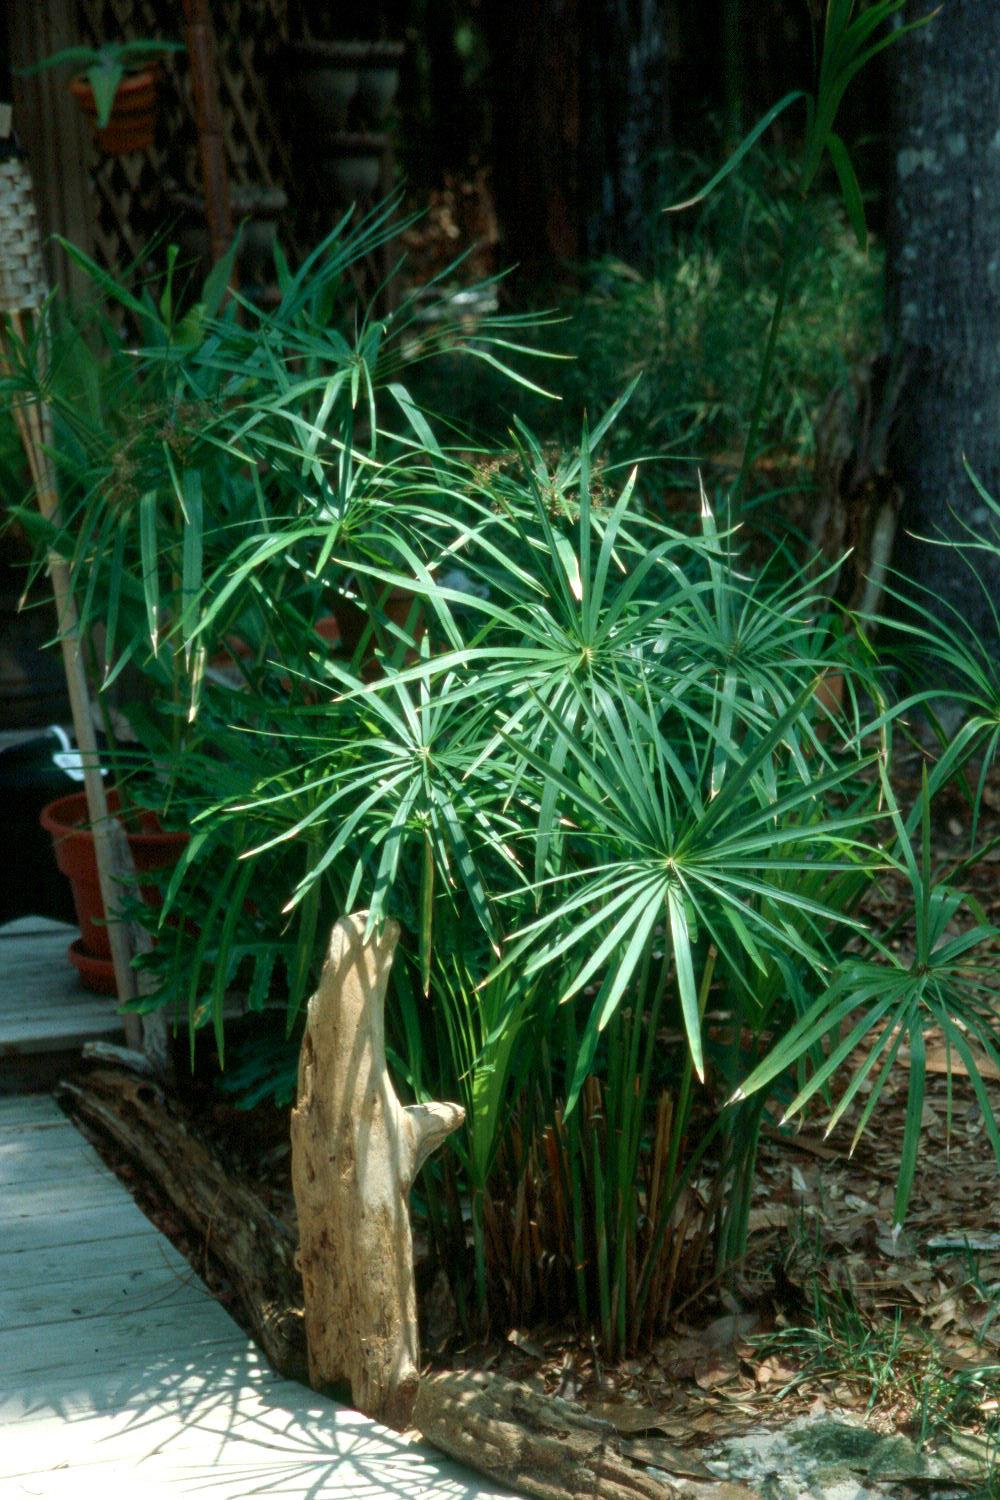 Umbrella Palm (Cyperus alternifolius) Indoor / Outdoor Live Plant